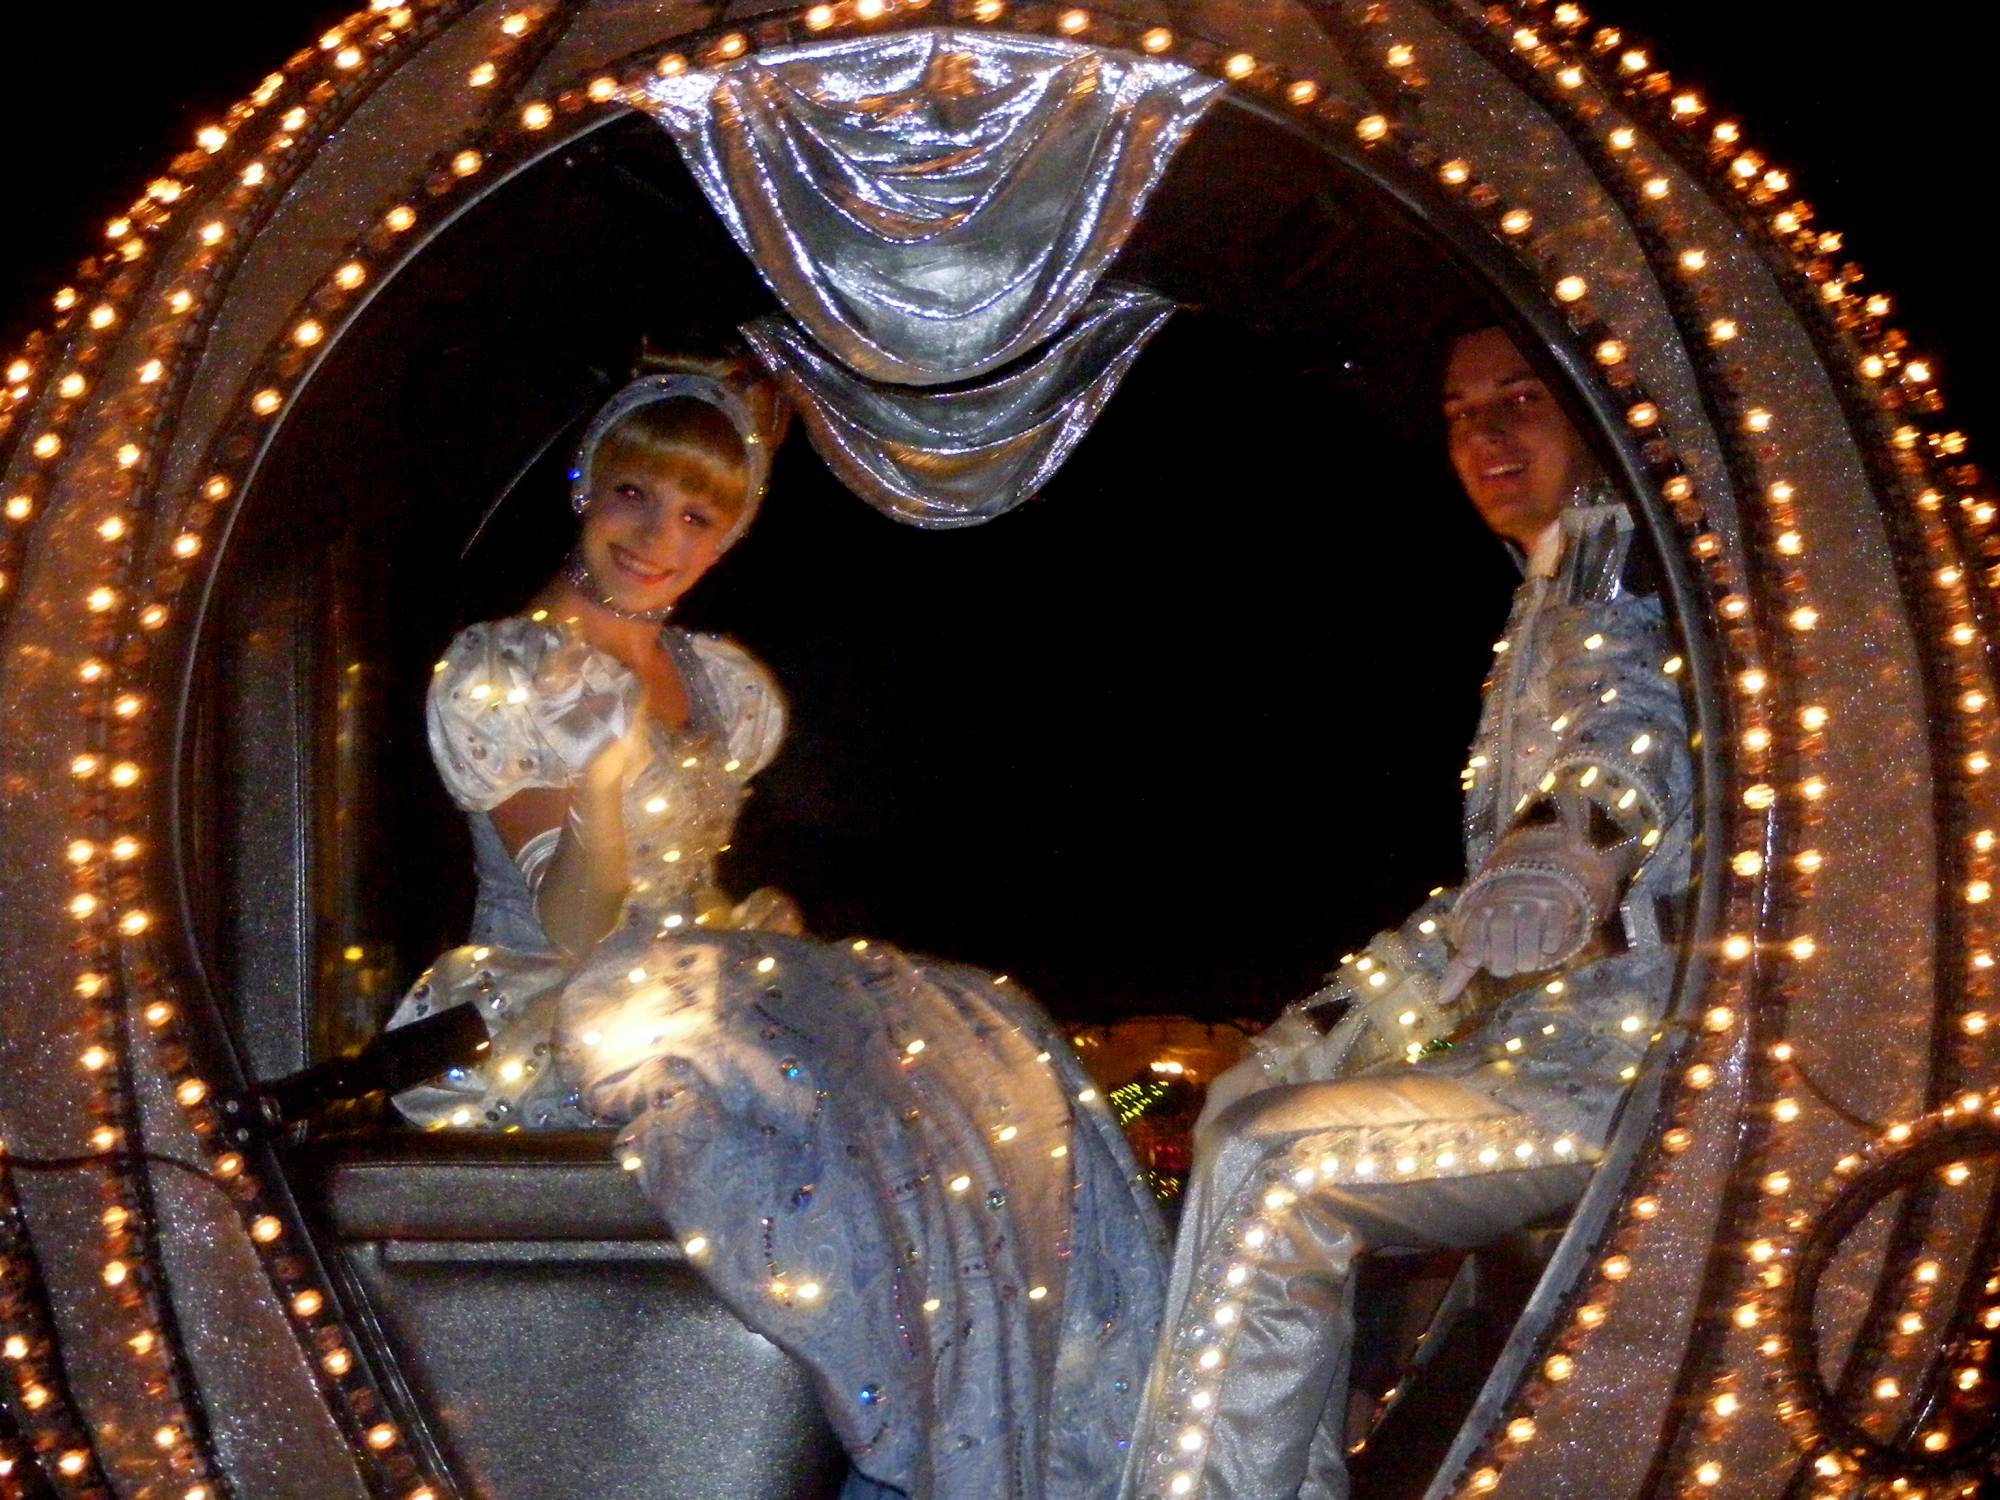 Magic Kingdom - SpectroMagic Cinderella